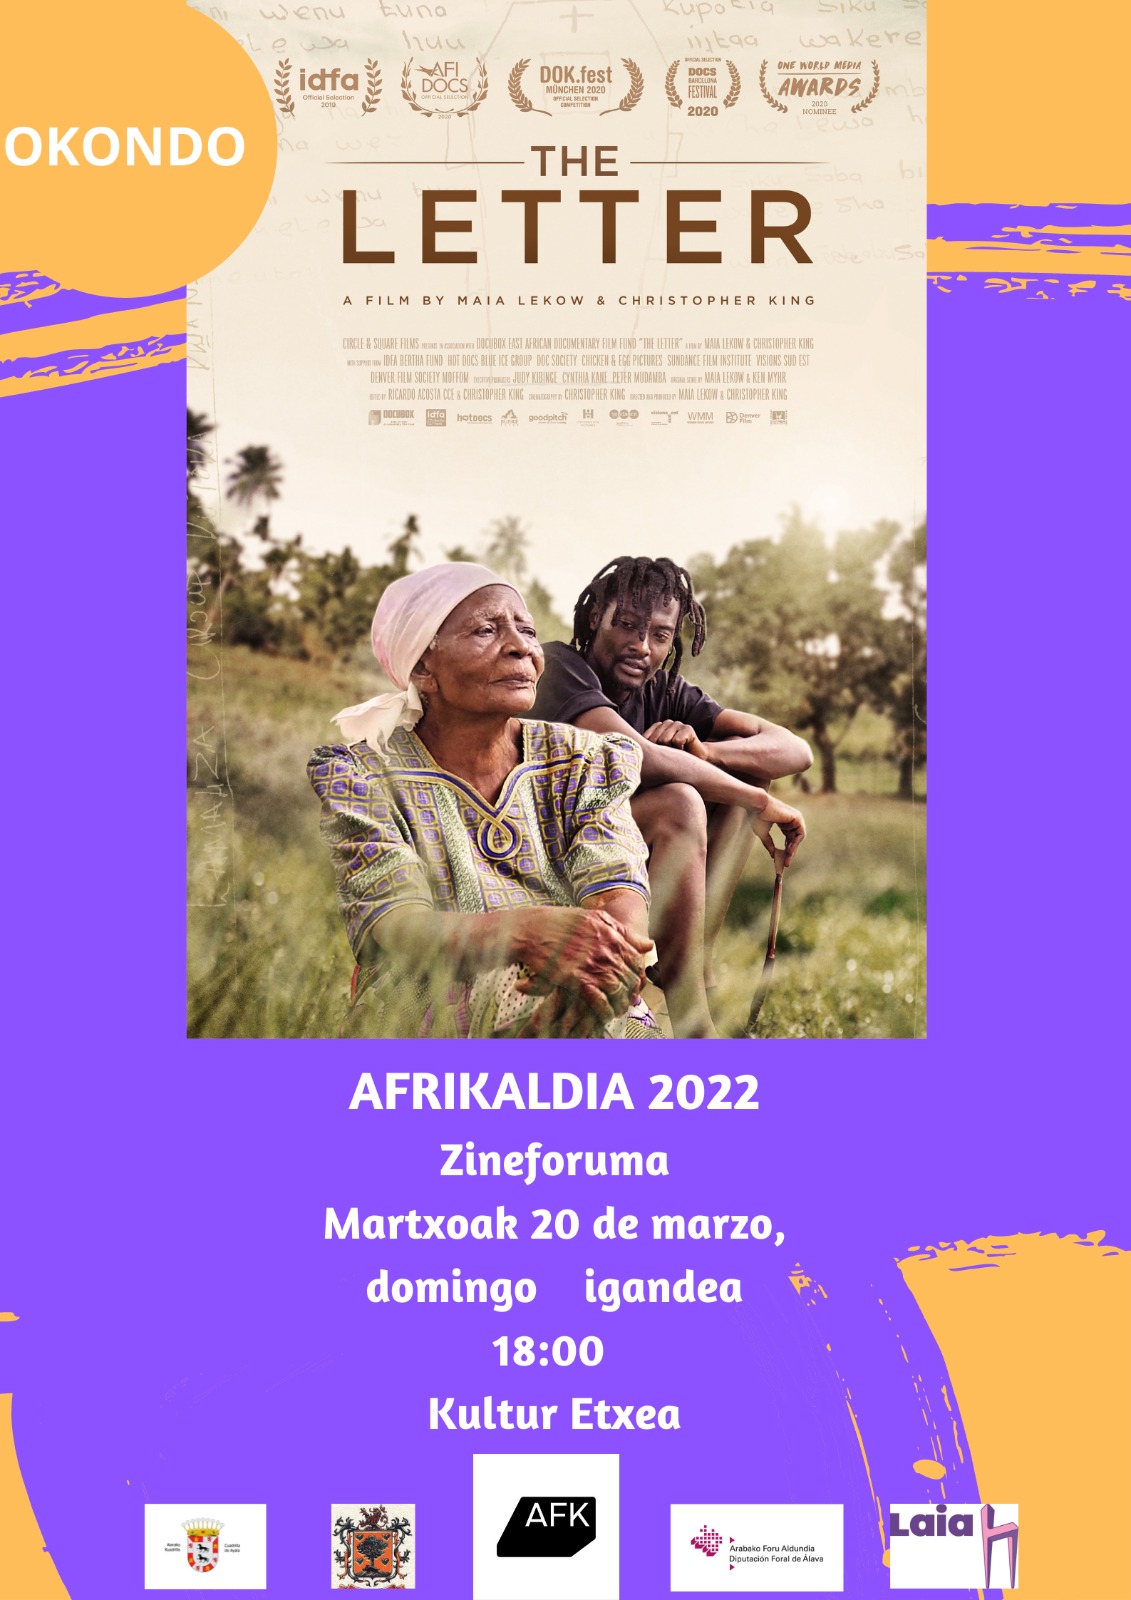 AFRIKALDIA 2022, CINE FORUM